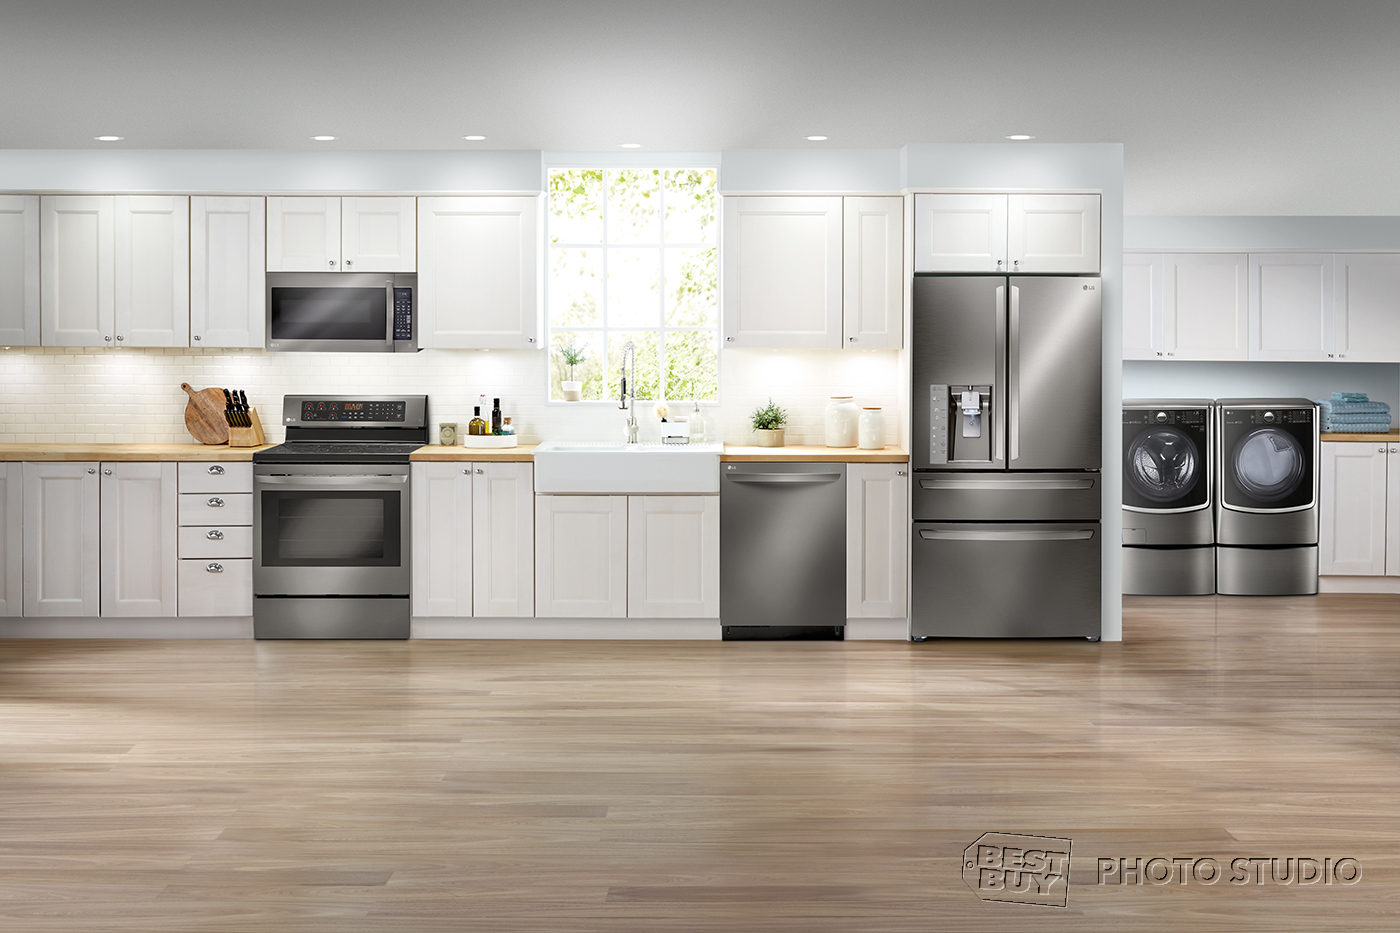 Appliances: Kitchen & Home Appliances - Best Buy